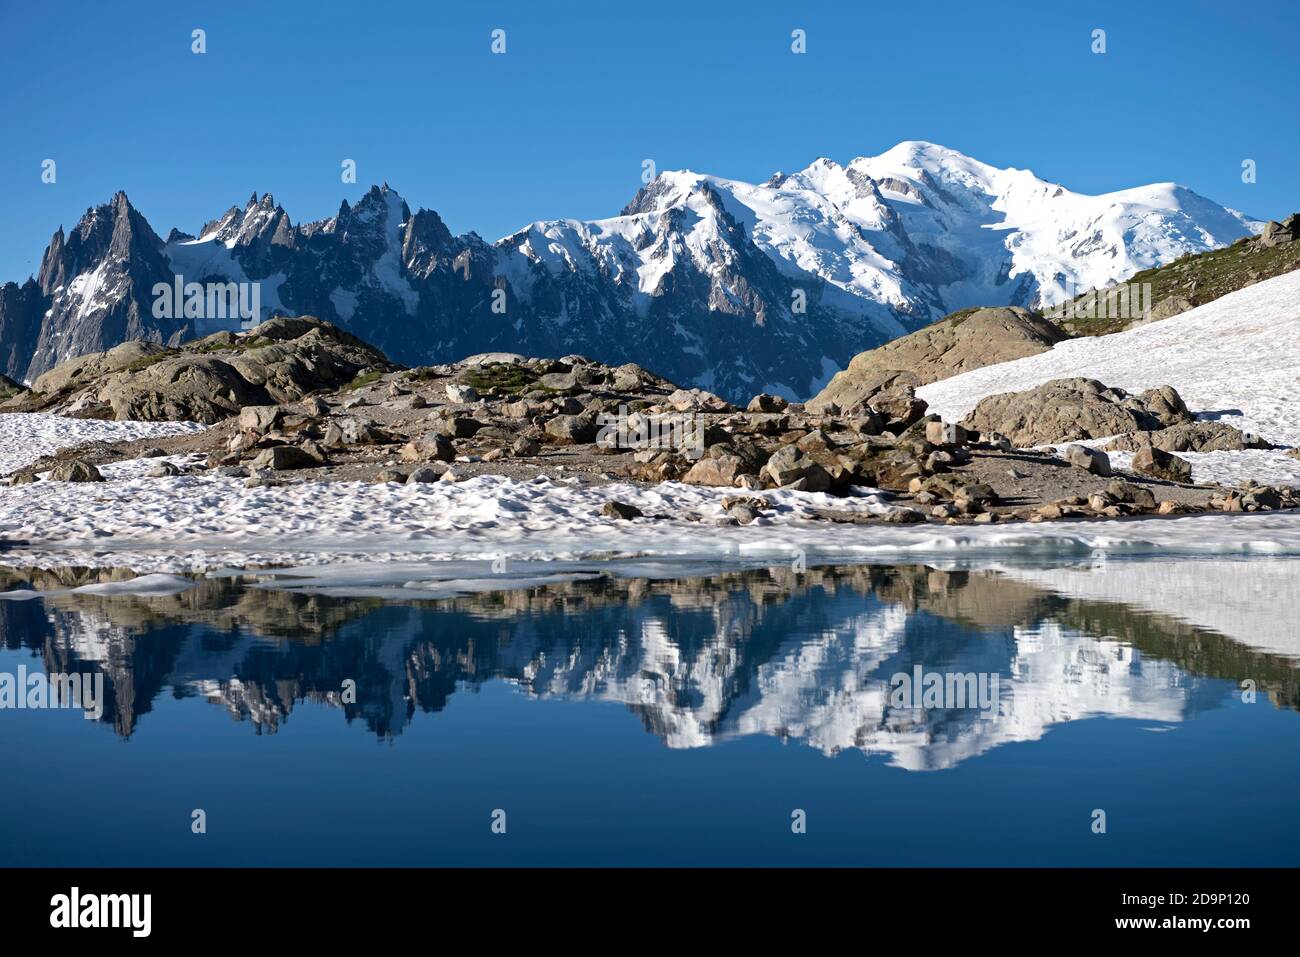 Francia, alta Savoia, Alpi, catena montuosa del Monte Bianco con Aiguilles de Chamonix (sinistra), Aiguille du midi (3842m), Monte bianco du Tacul (4248m Midden), Monte Maudit (4465m), Monte Bianco (4810m) e Aiguille de Bionnassay (4052m dx) riflettendo nel Lac Bianco (2350m) Foto Stock